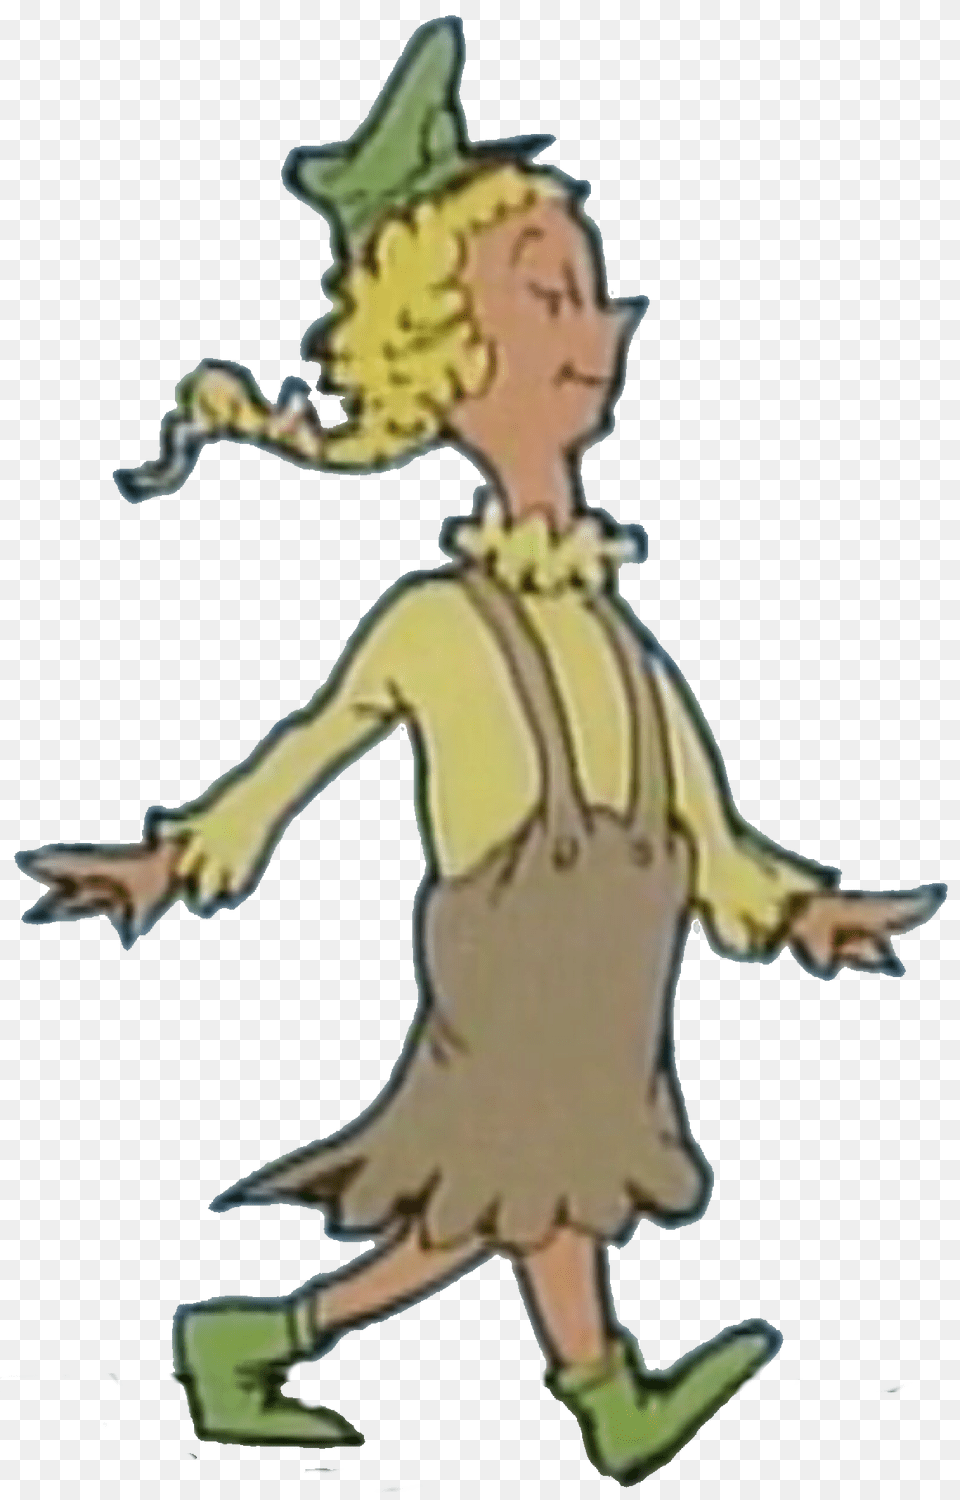 Gretchen Von Schwinn Dr Seuss Wiki Fandom Powered, Baby, Person, Clothing, Hat Png Image